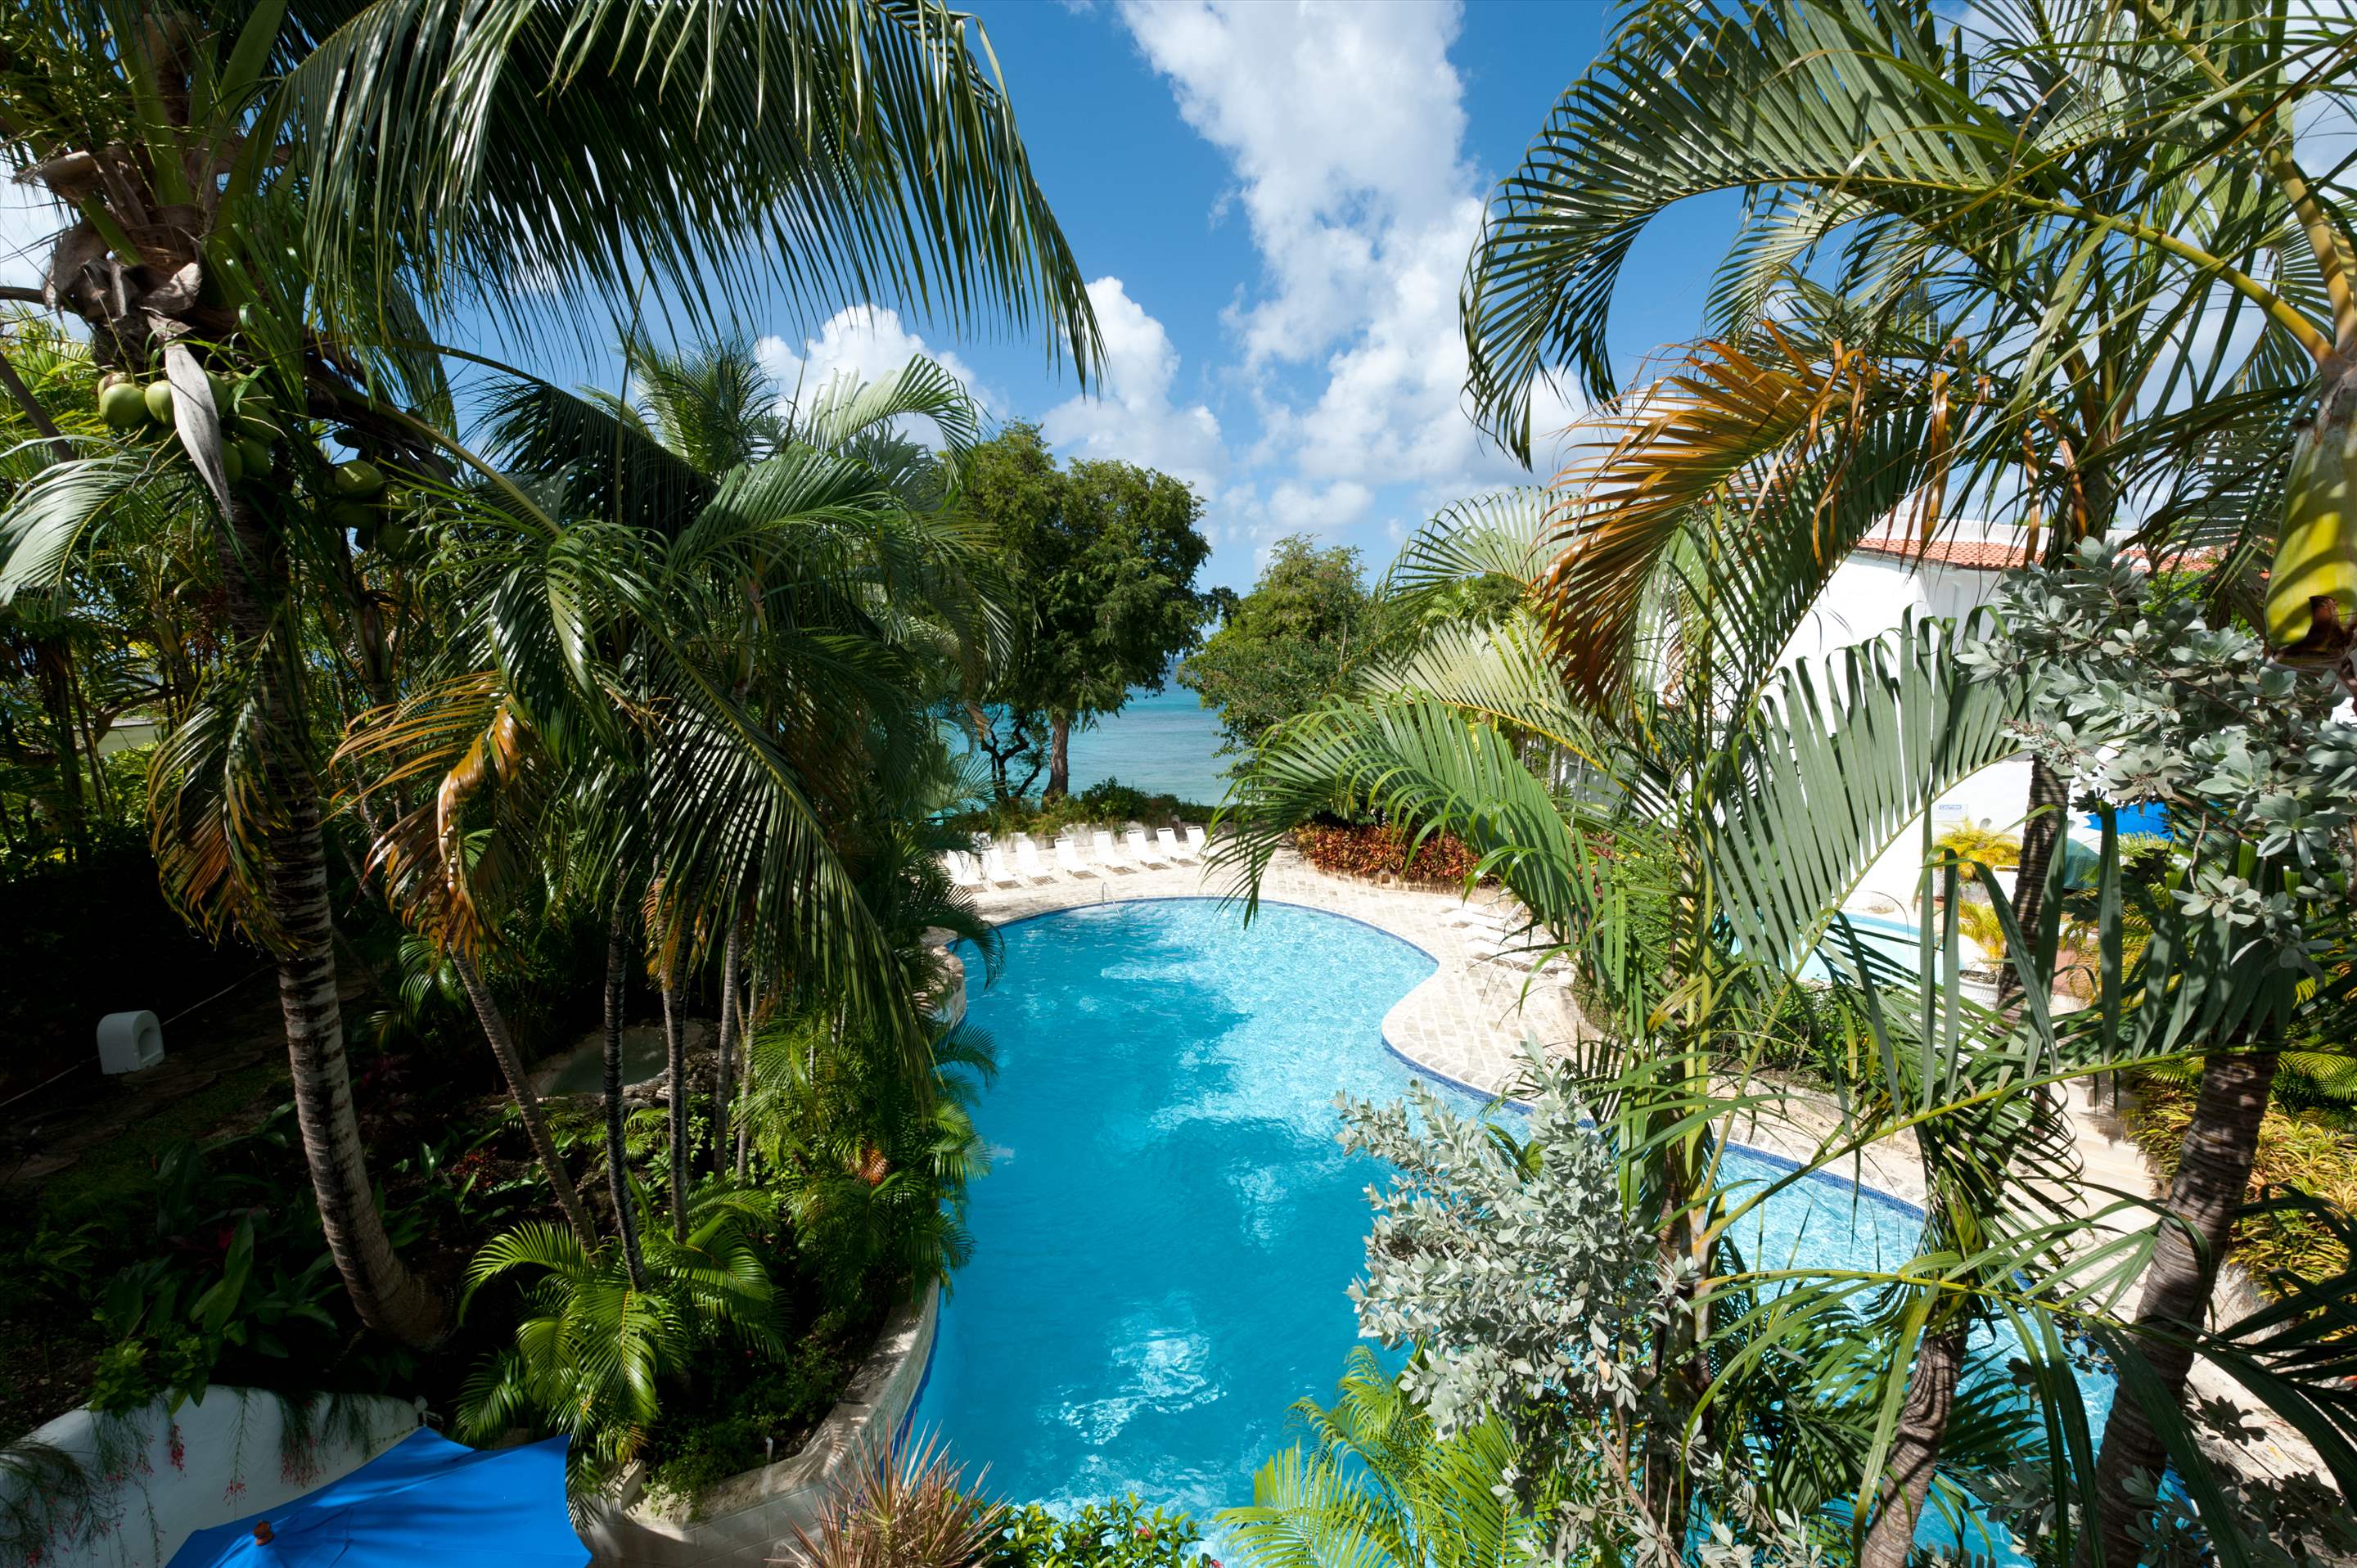 Merlin Bay Gingerbread, 3 bedroom villa in St. James & West Coast, Barbados Photo #2